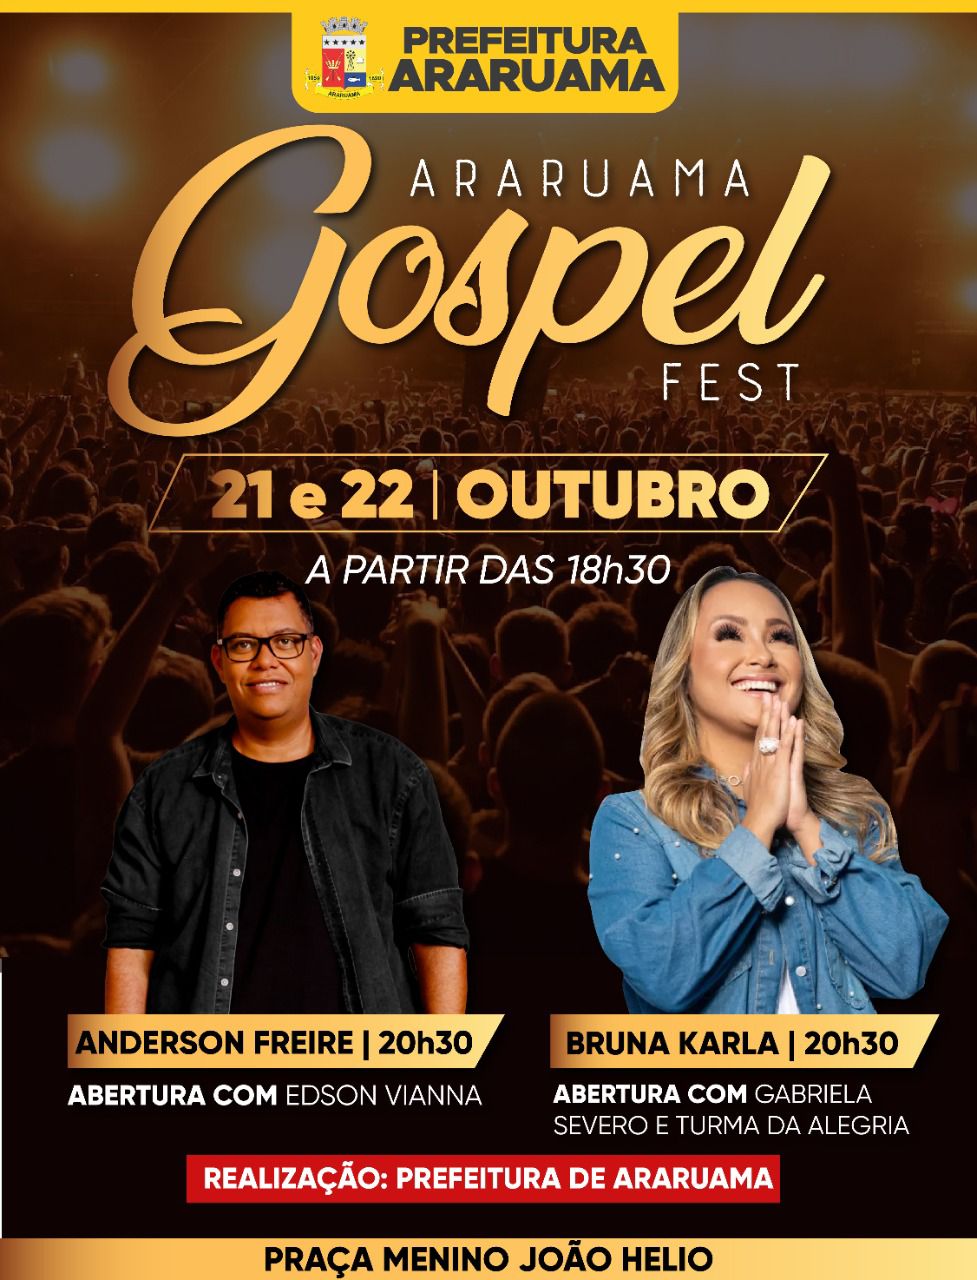 Prefeitura vai realizar o “Araruama Gospel Fest” na Praça Menino João Hélio